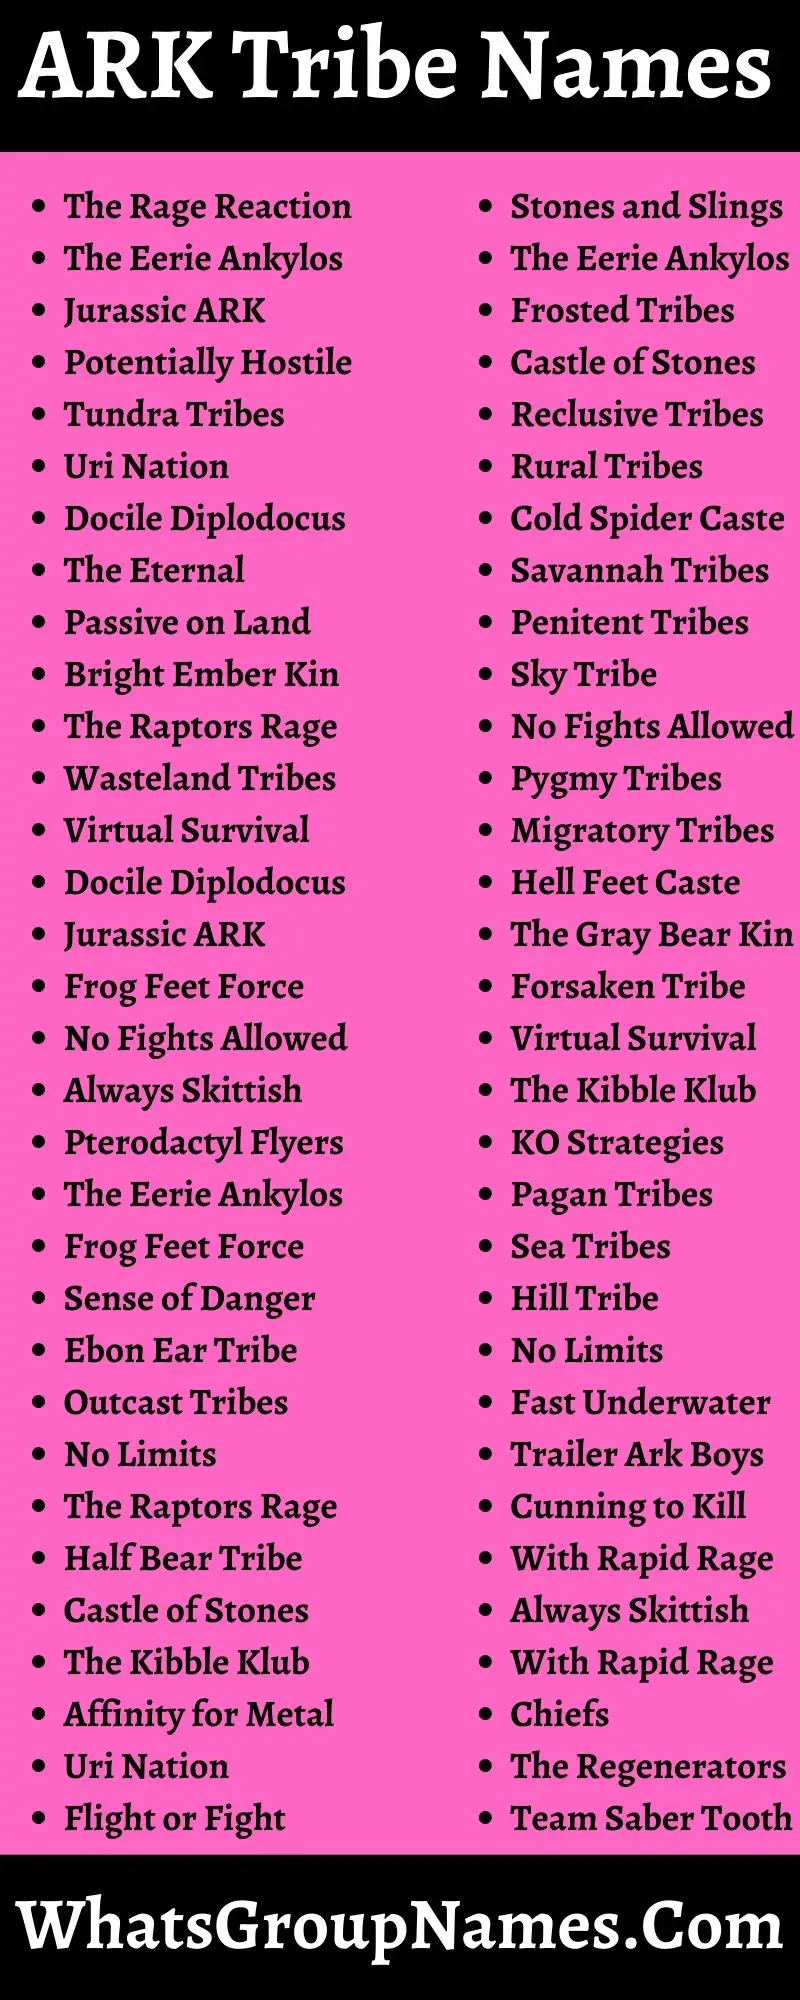 ARK Tribe Names